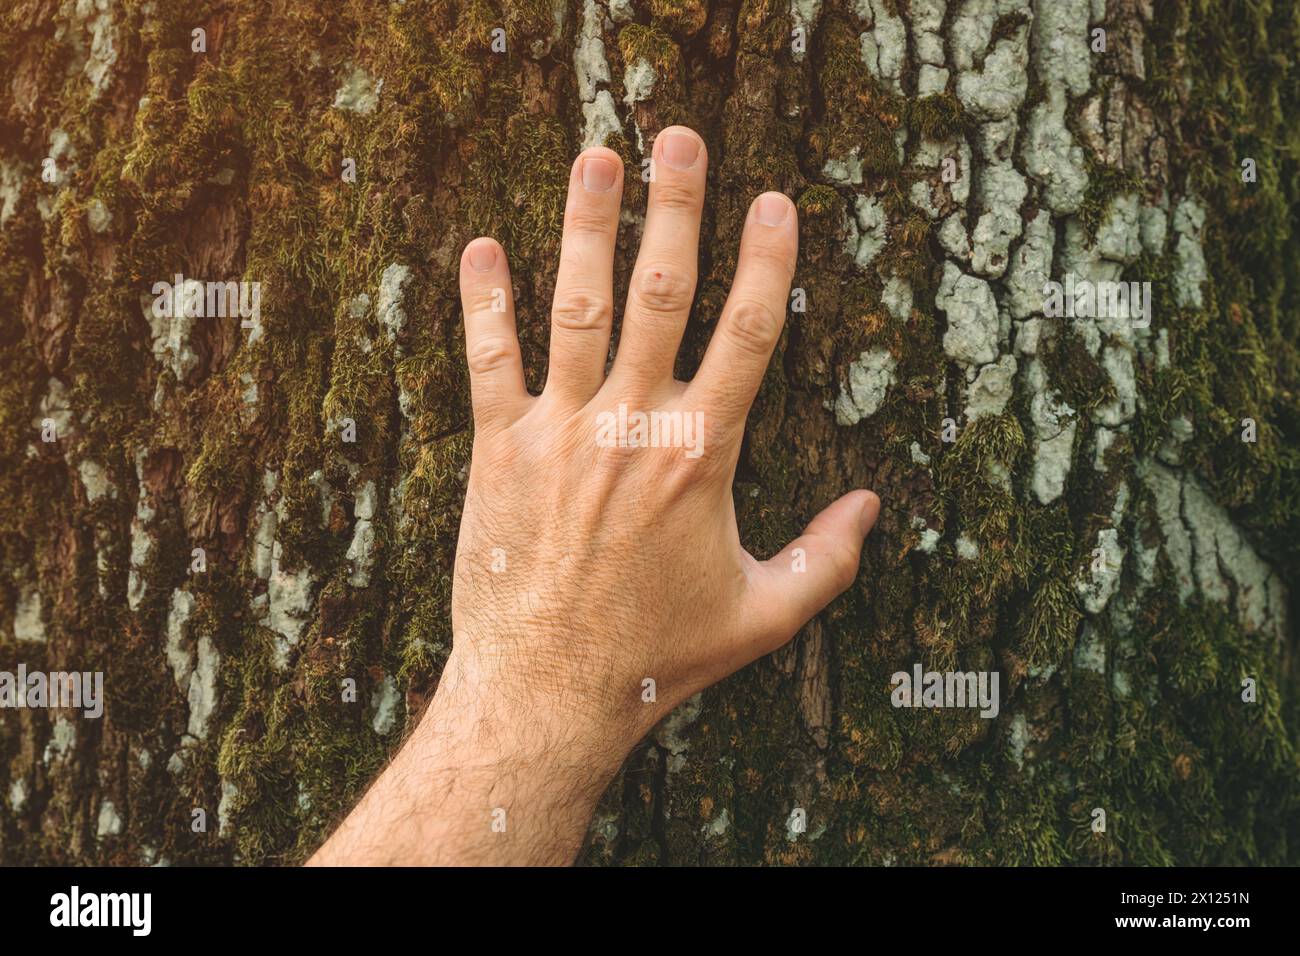 Concept de jour de la Terre, gros plan de la main écologiste masculine touchant doucement la croûte du grand tronc d'arbre, s Banque D'Images